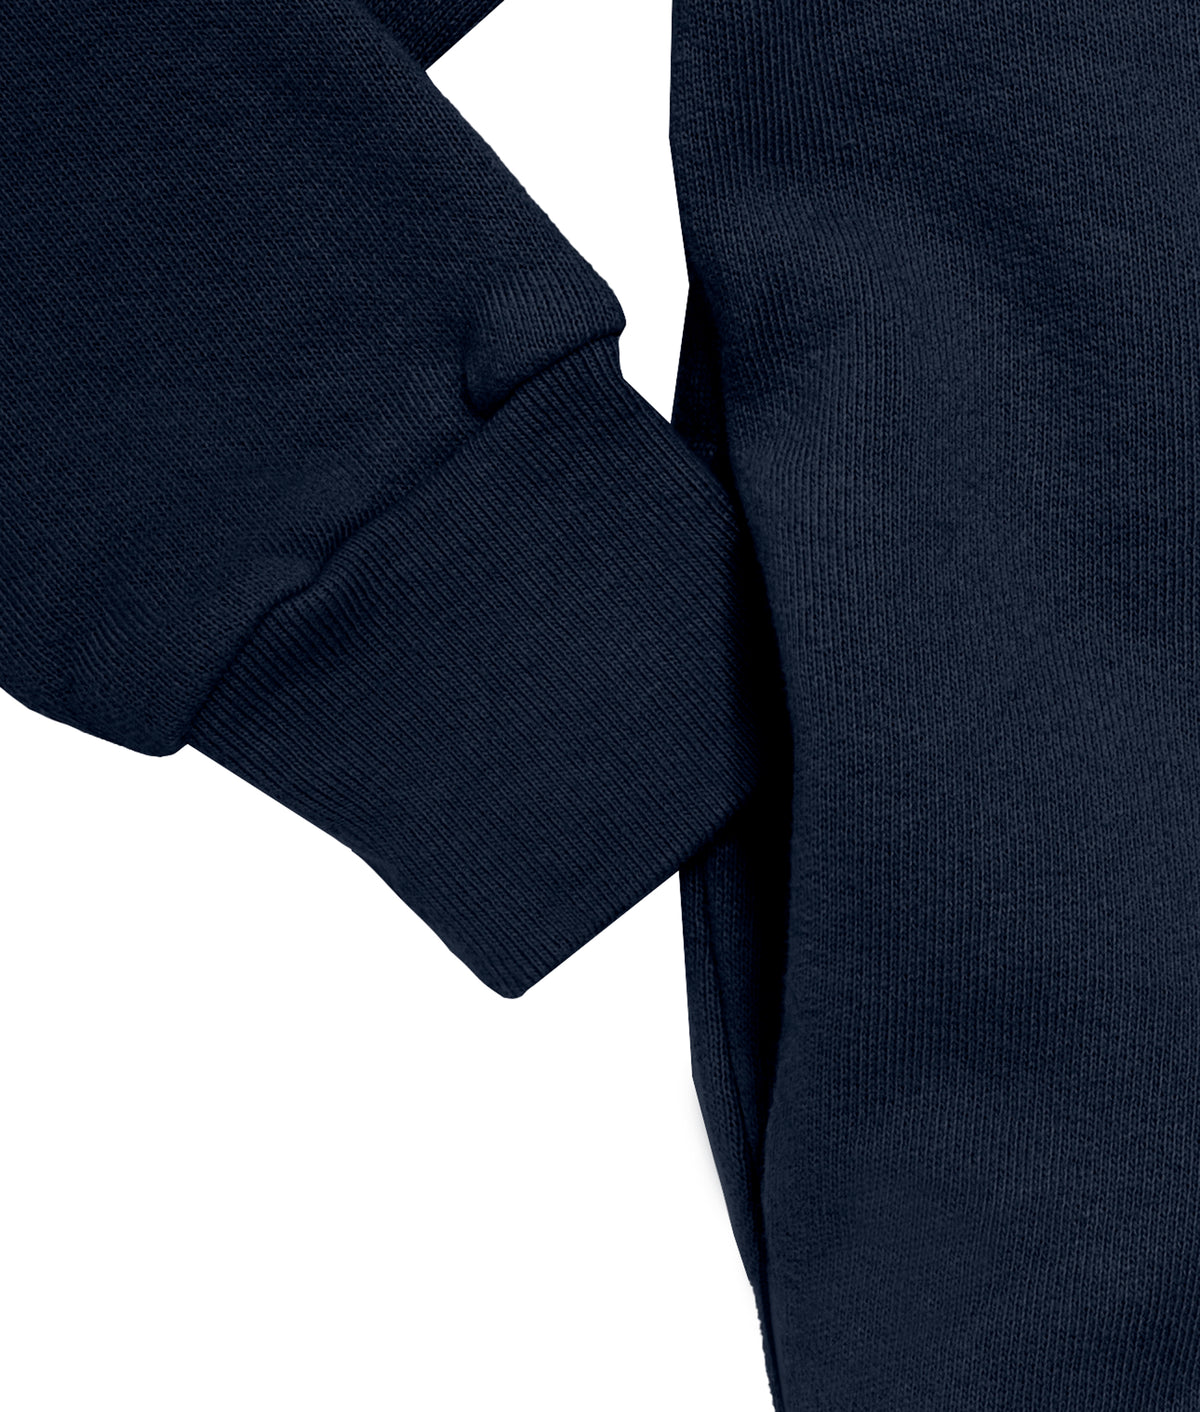 Soft &amp; Cozy 100% Cotton Fleece Zip Hoodie with Inner Pockets | Dark Navy